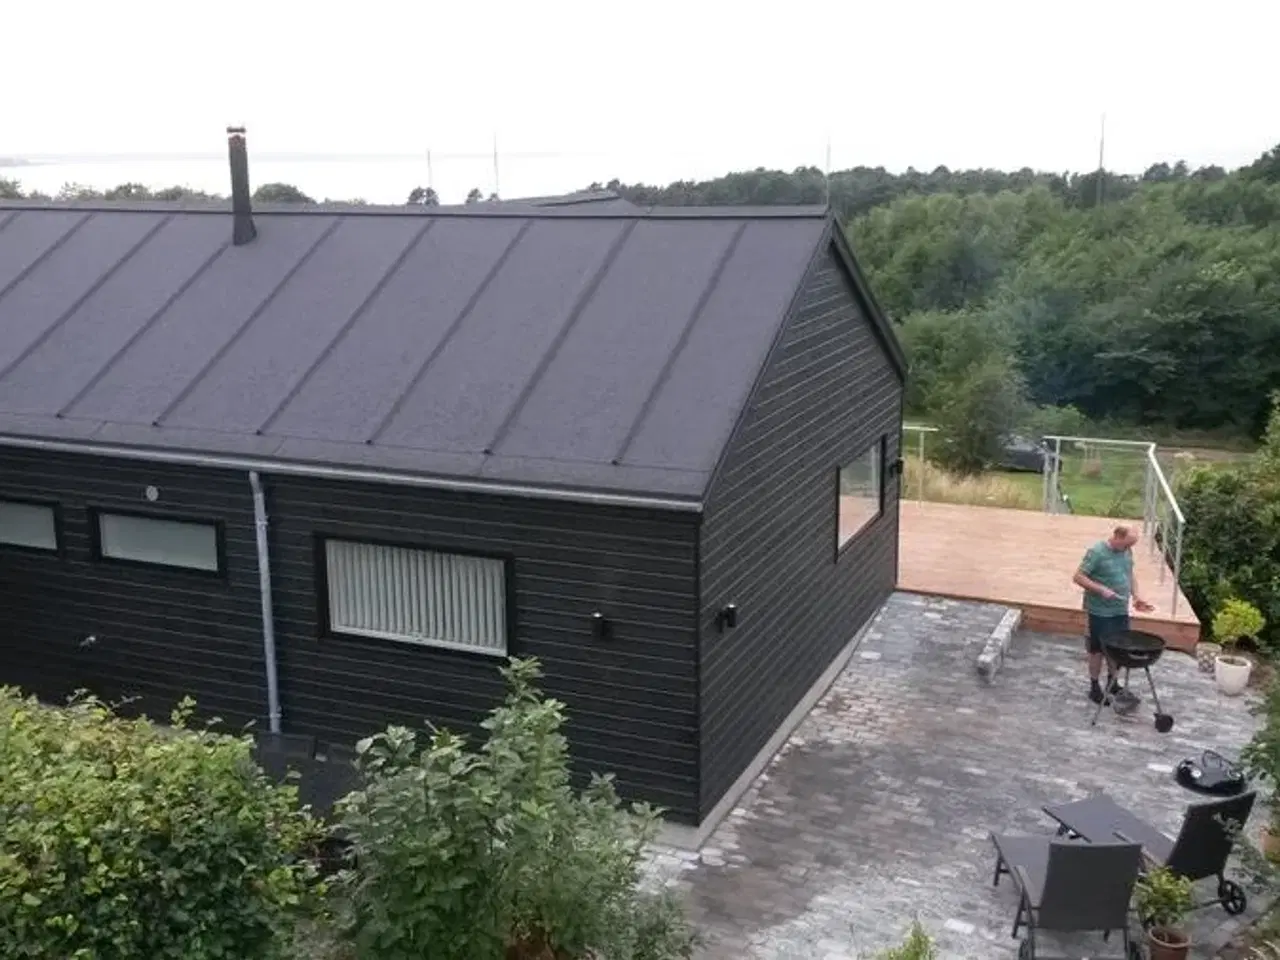 Billede 2 - Nyt, dejligt feriehus for 8 personer udlejes i Veddinge bakker - et af Danmarks smukkeste områder